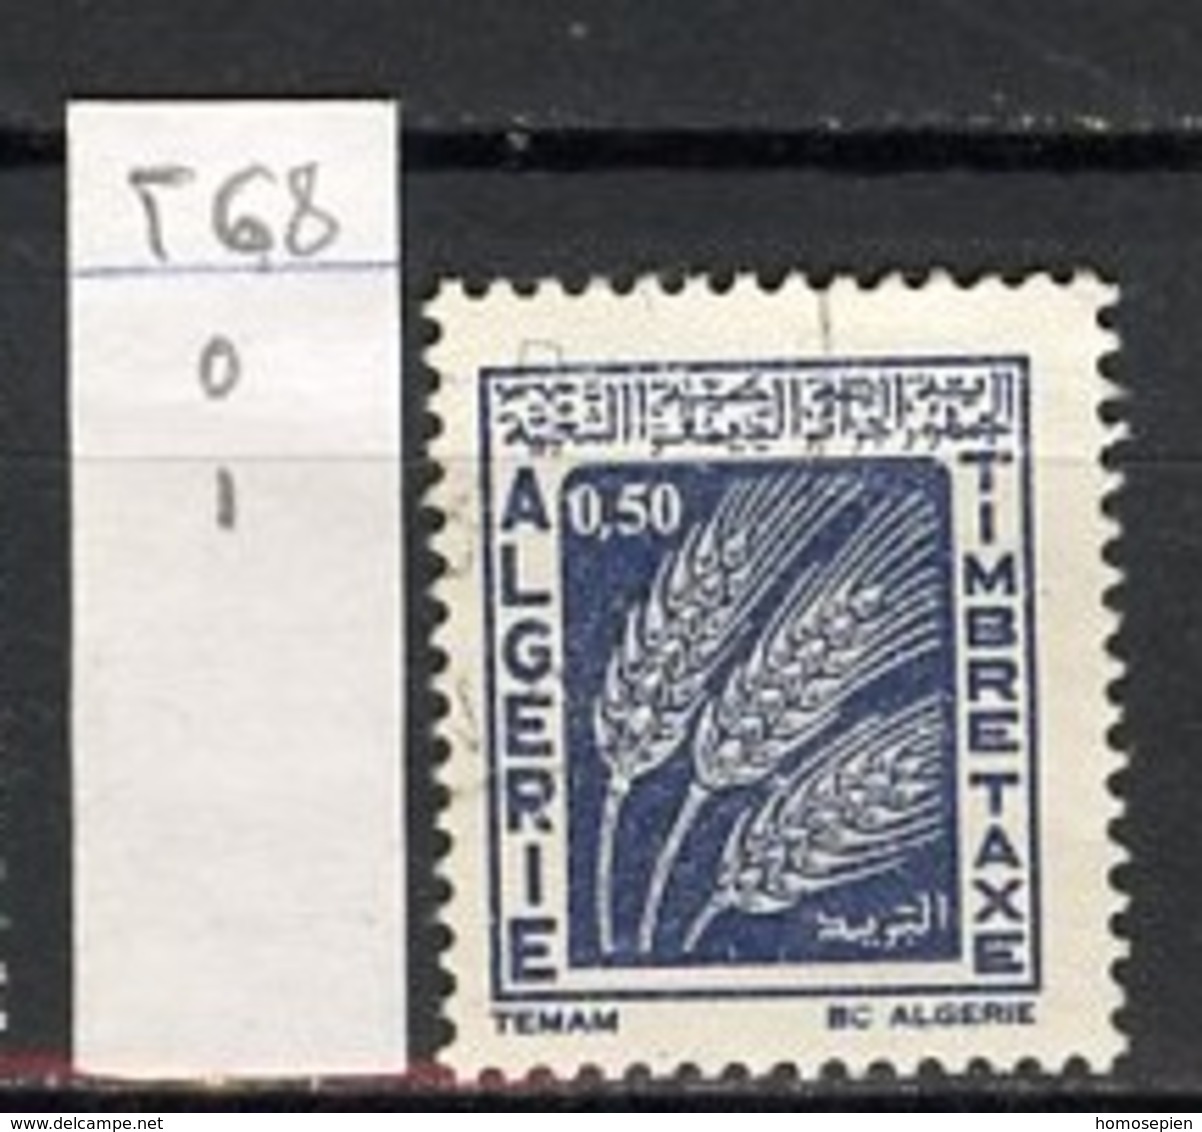 Algérie - Algerien - Algeria Taxe 1972 Y&T N°T68 - Michel N°P68 (o) - 50c épis De Blé - Strafport